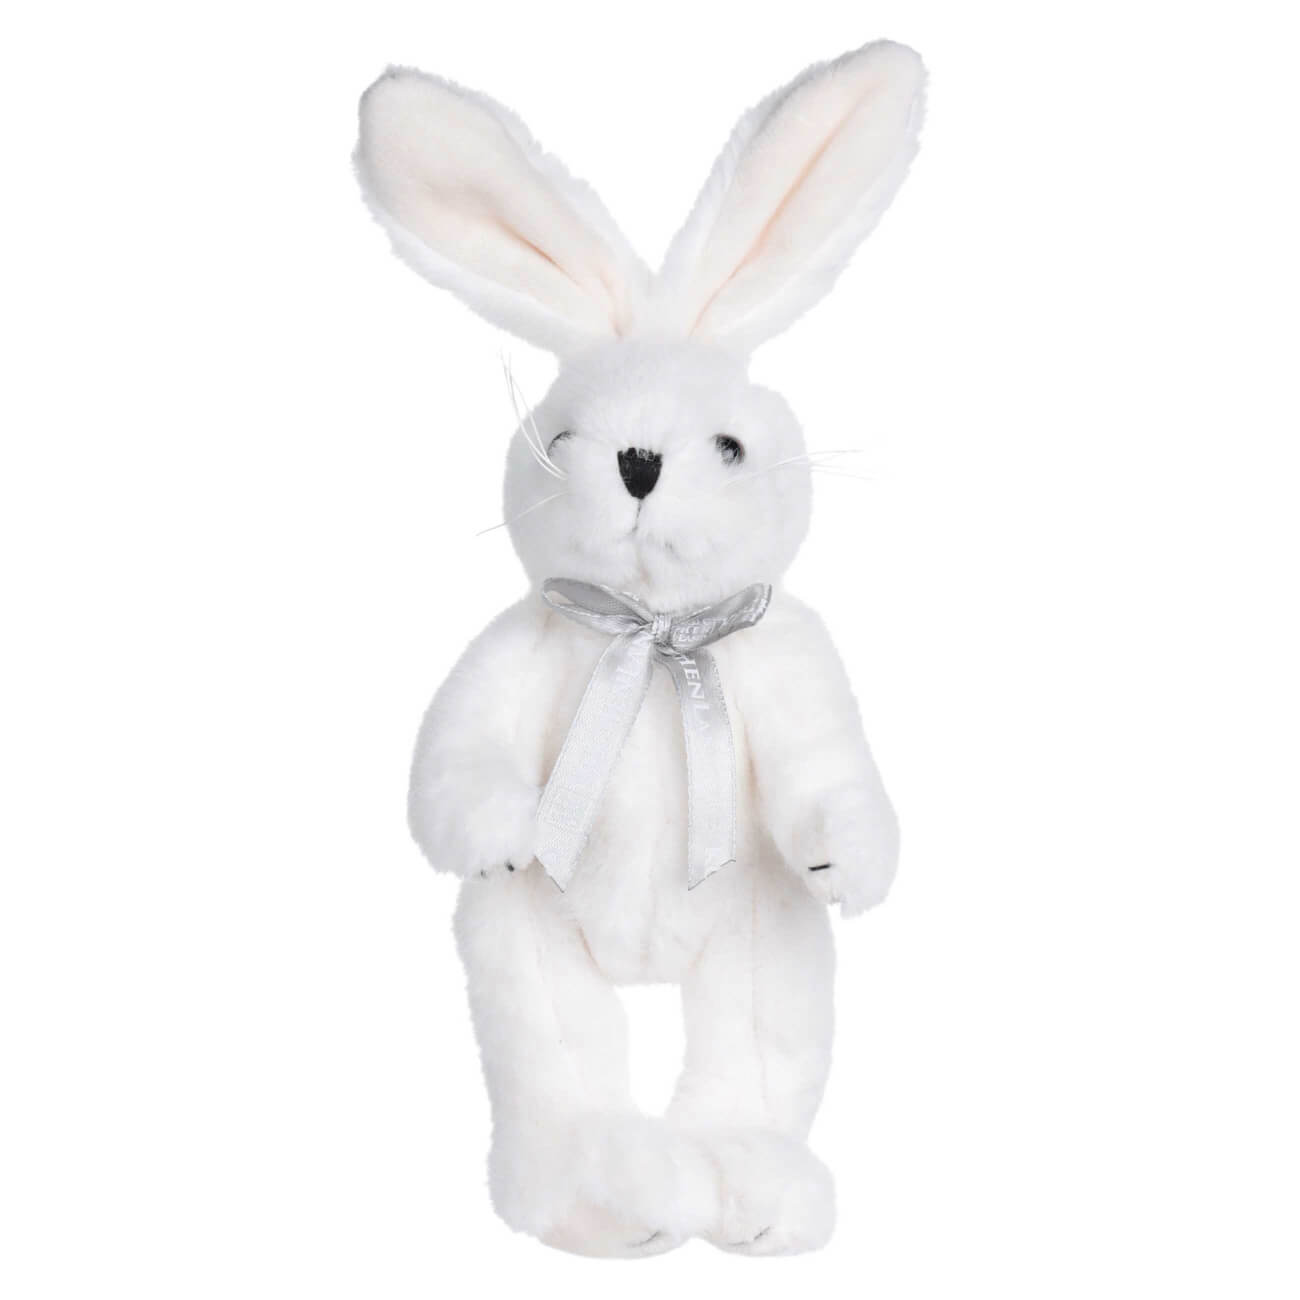 Игрушка, 20 см, мягкая, с подвижными лапами, полиэстер, белая, Кролик, Rabbit toy мягкая игрушка зайка ми розовая дымка 25 см